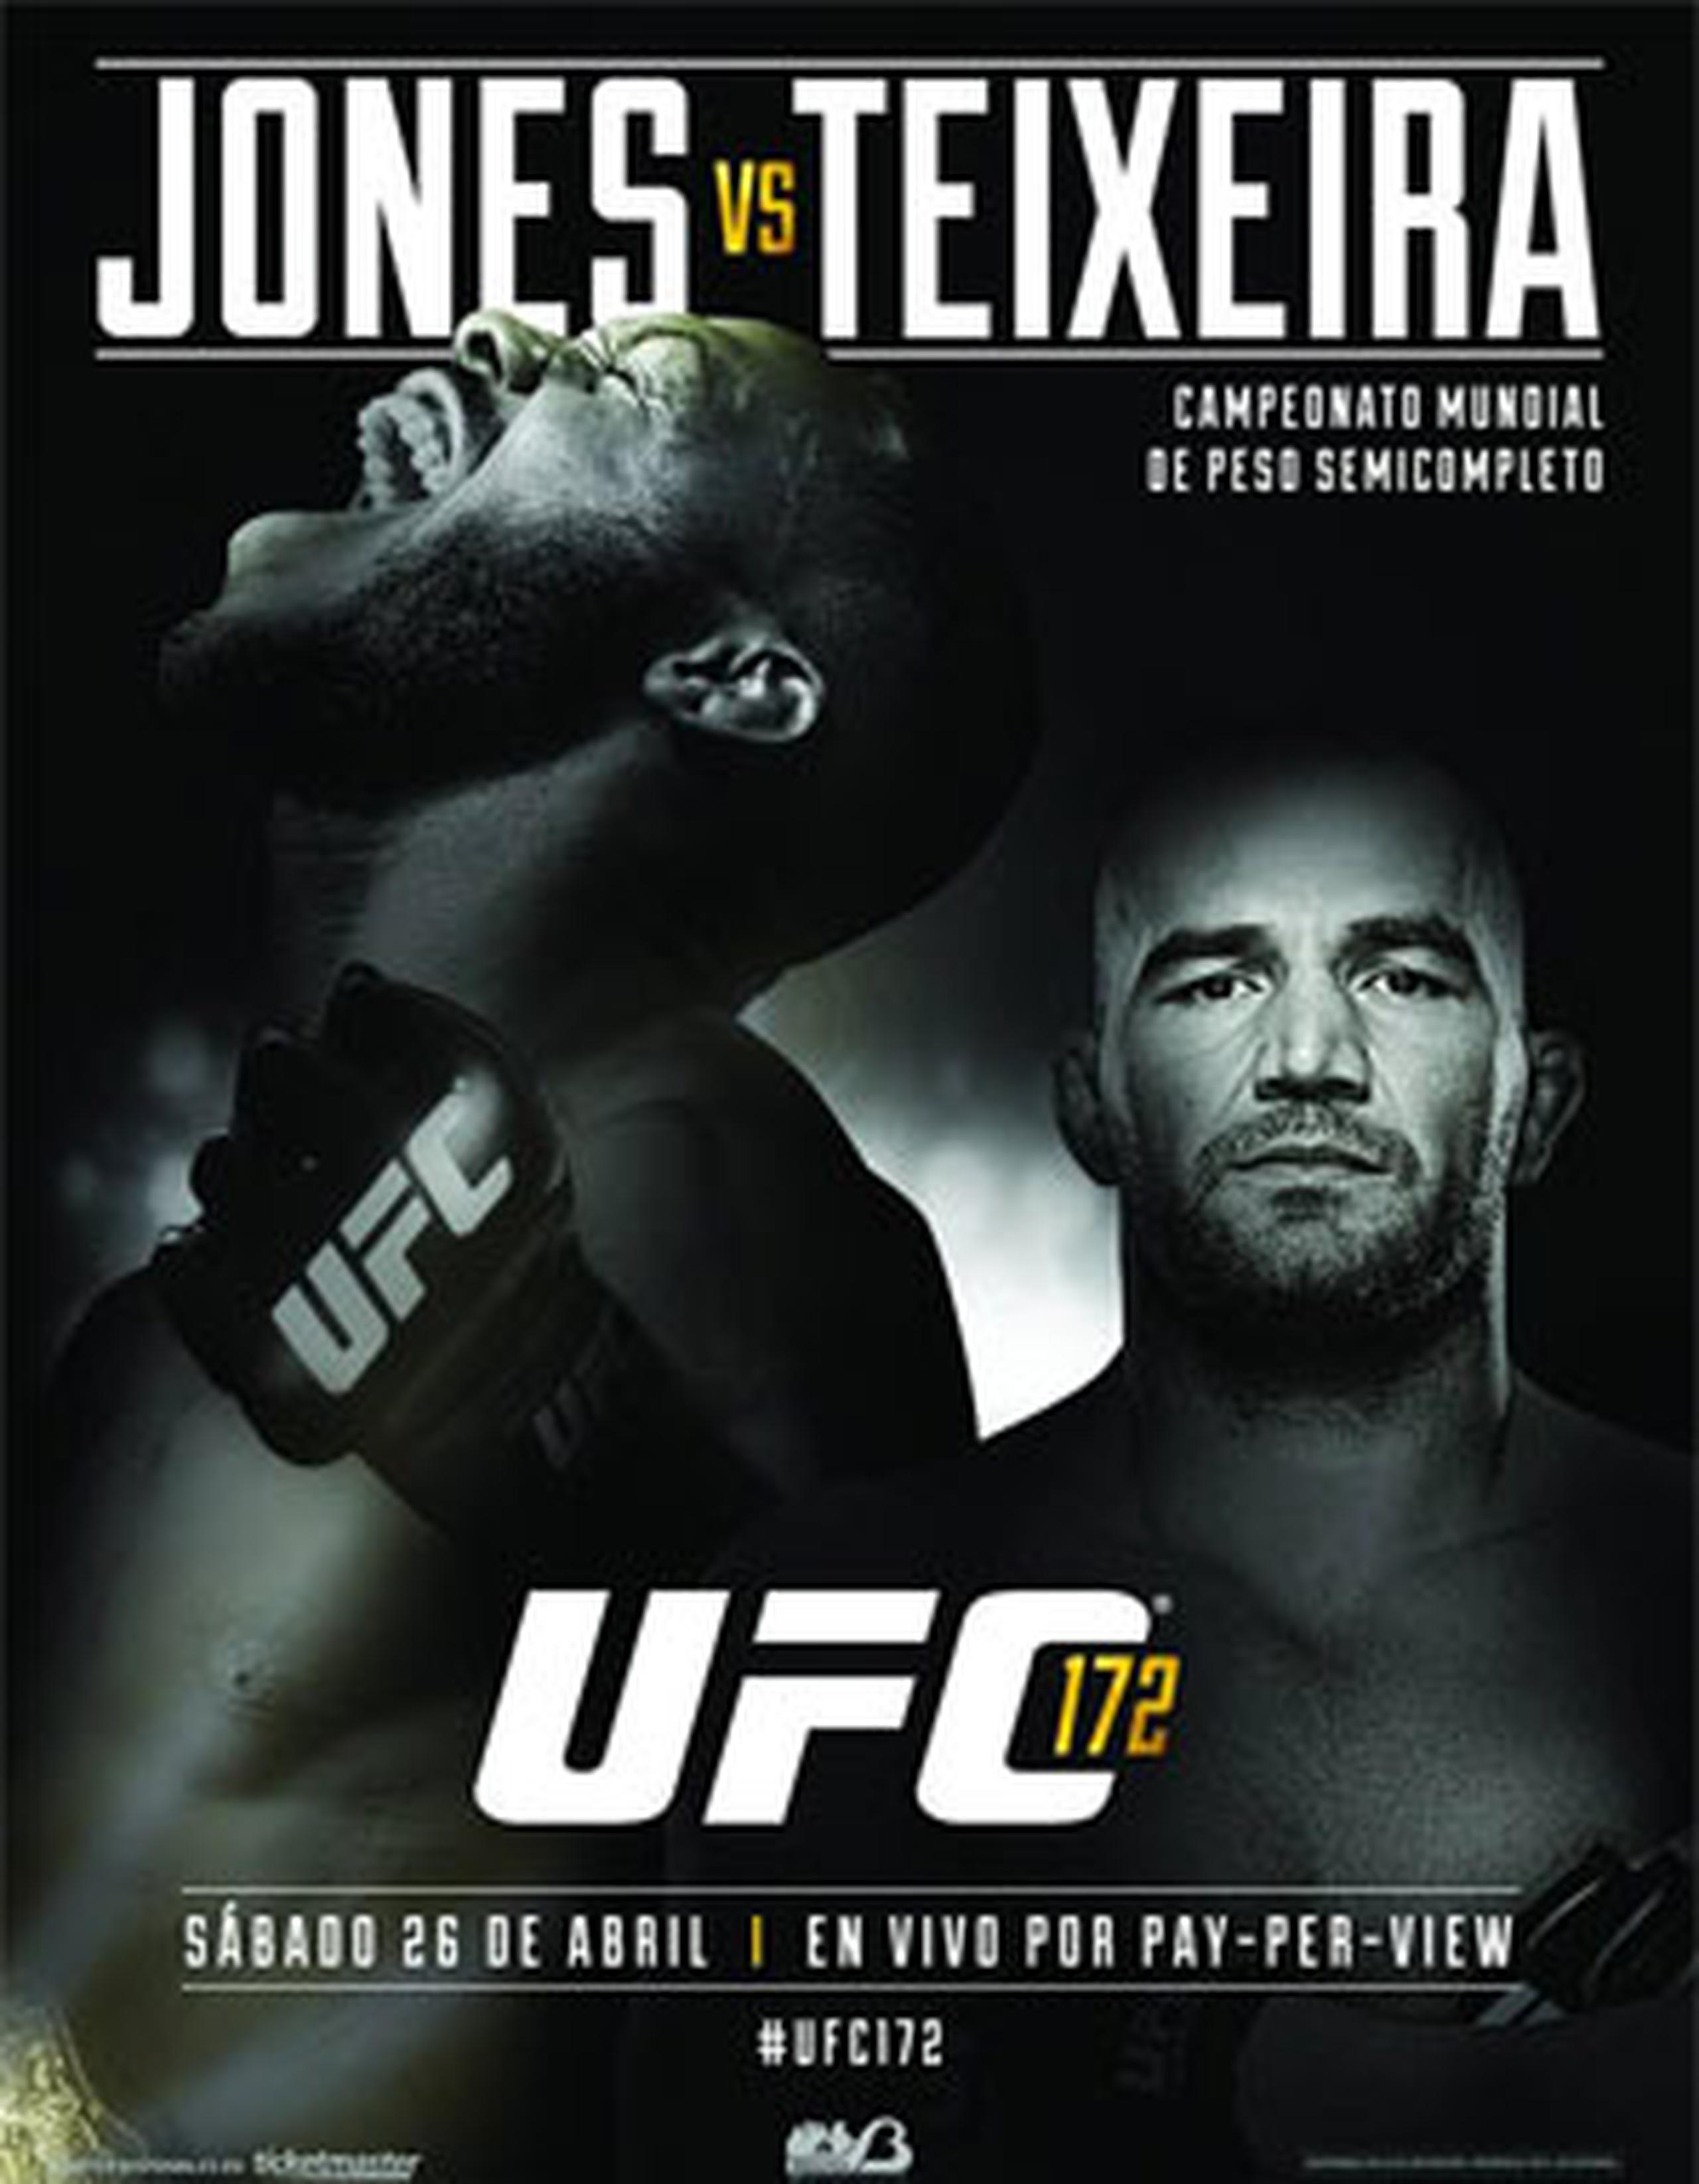 Las mismas comenzarán este sábado con la celebración del cartel de UFC172, estelarizado por la defensa de campeonato semipesado de Jon “Bones” Jones (19-1) ante el imponente brasileño Glover Teixeira (22-2), ganador de 20 peleas al hilo.